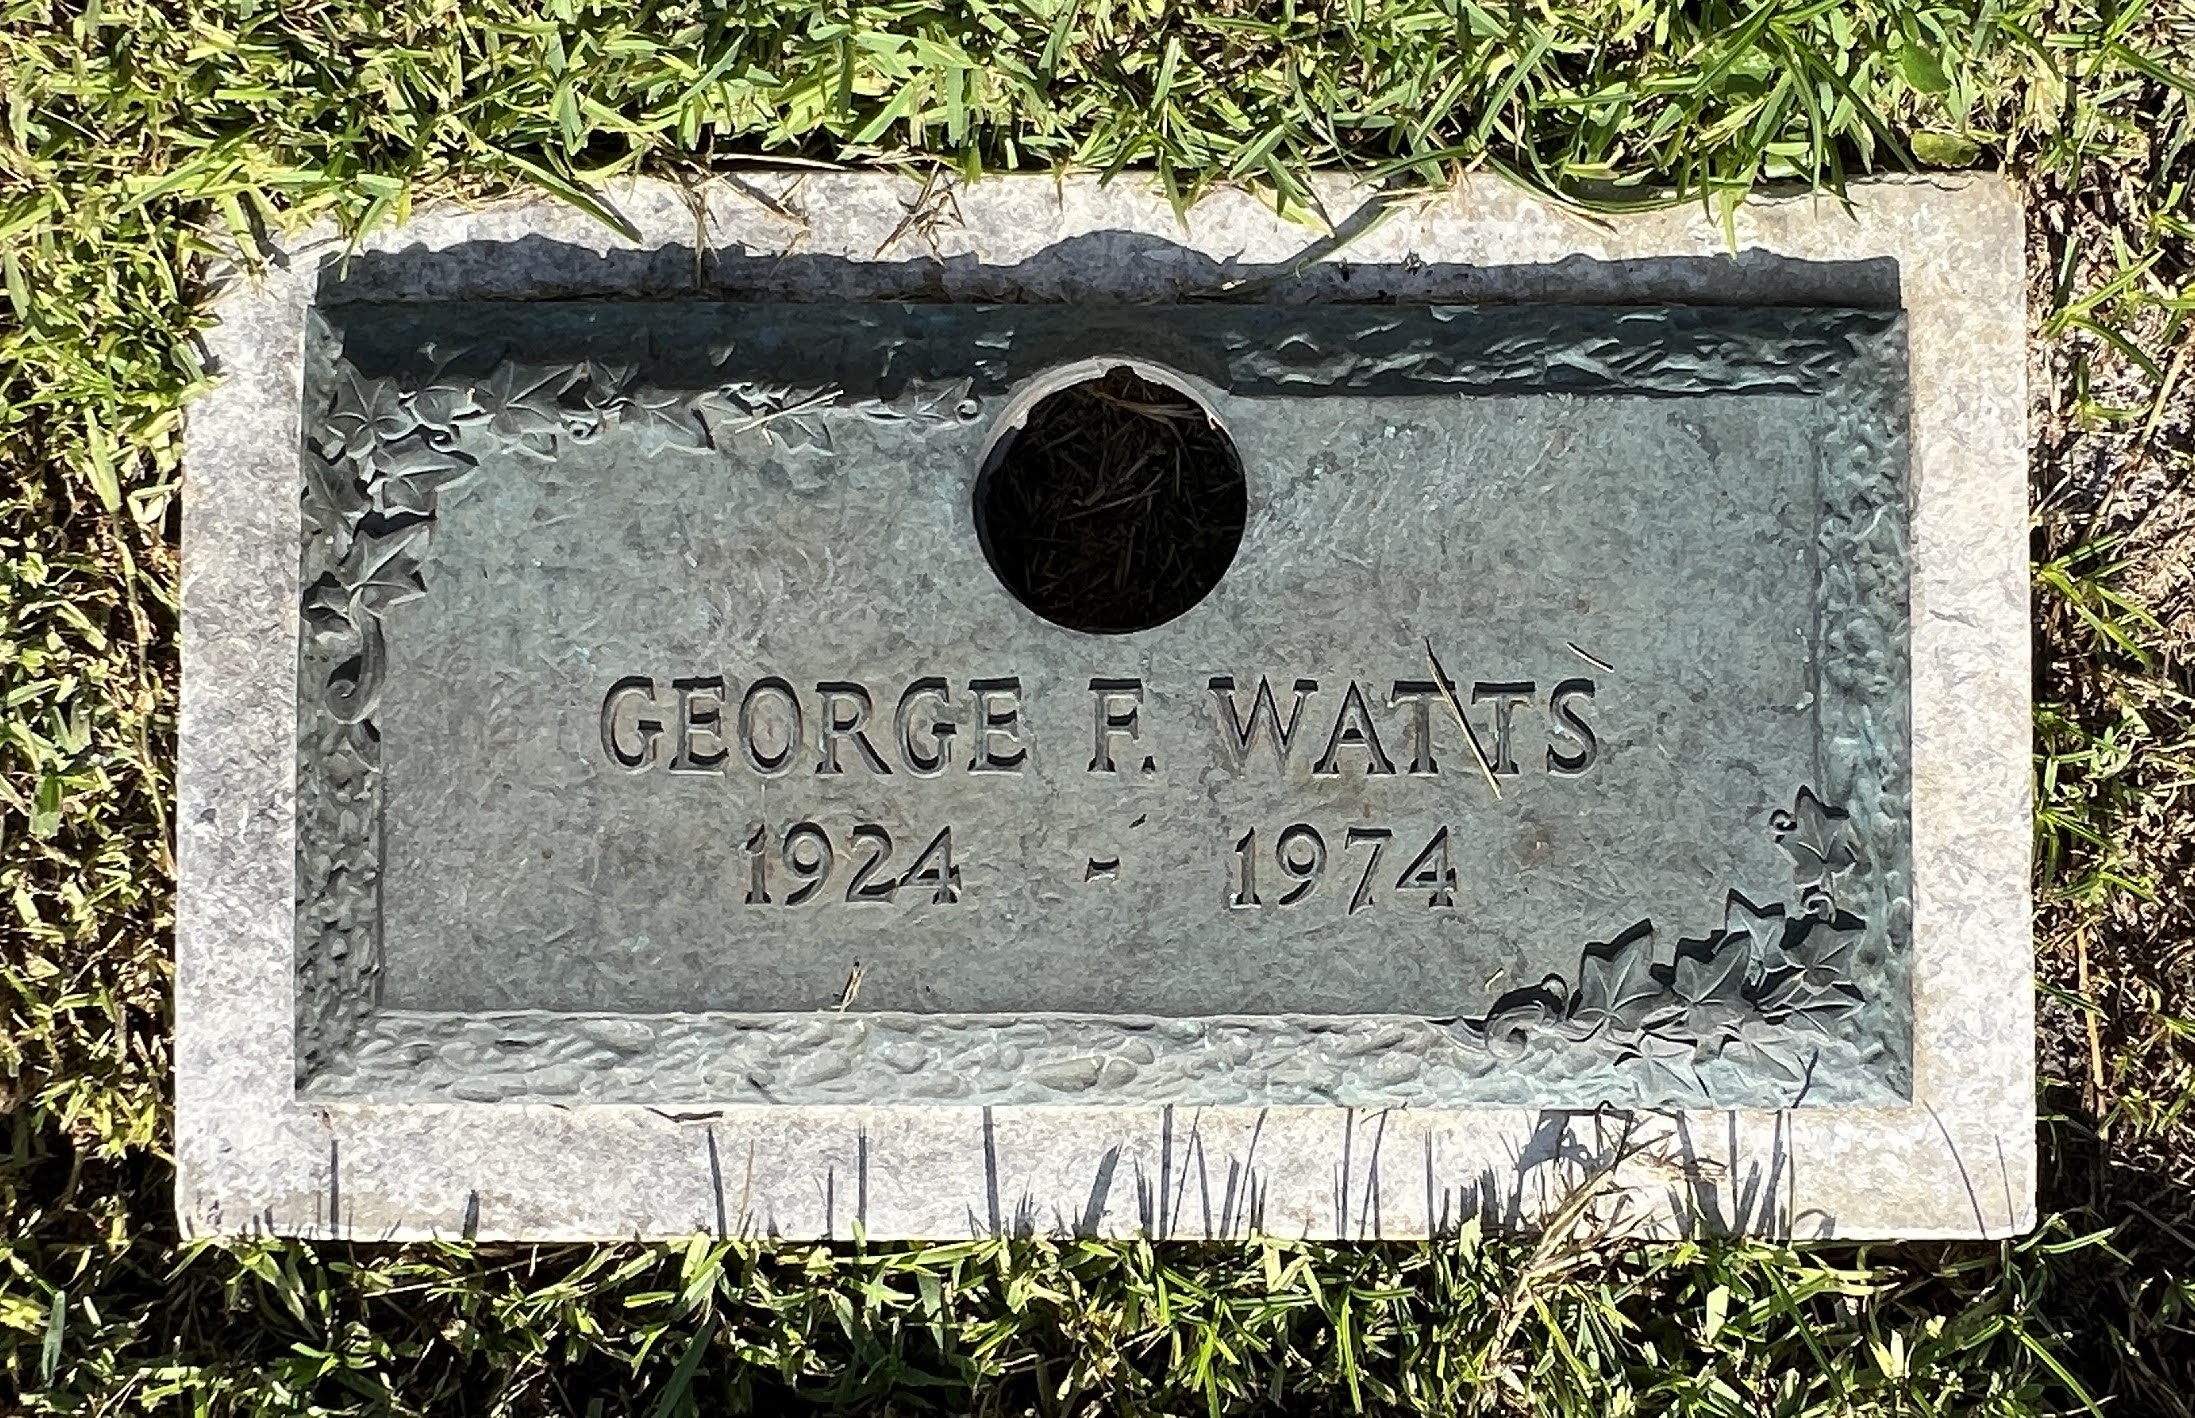 George F Watts